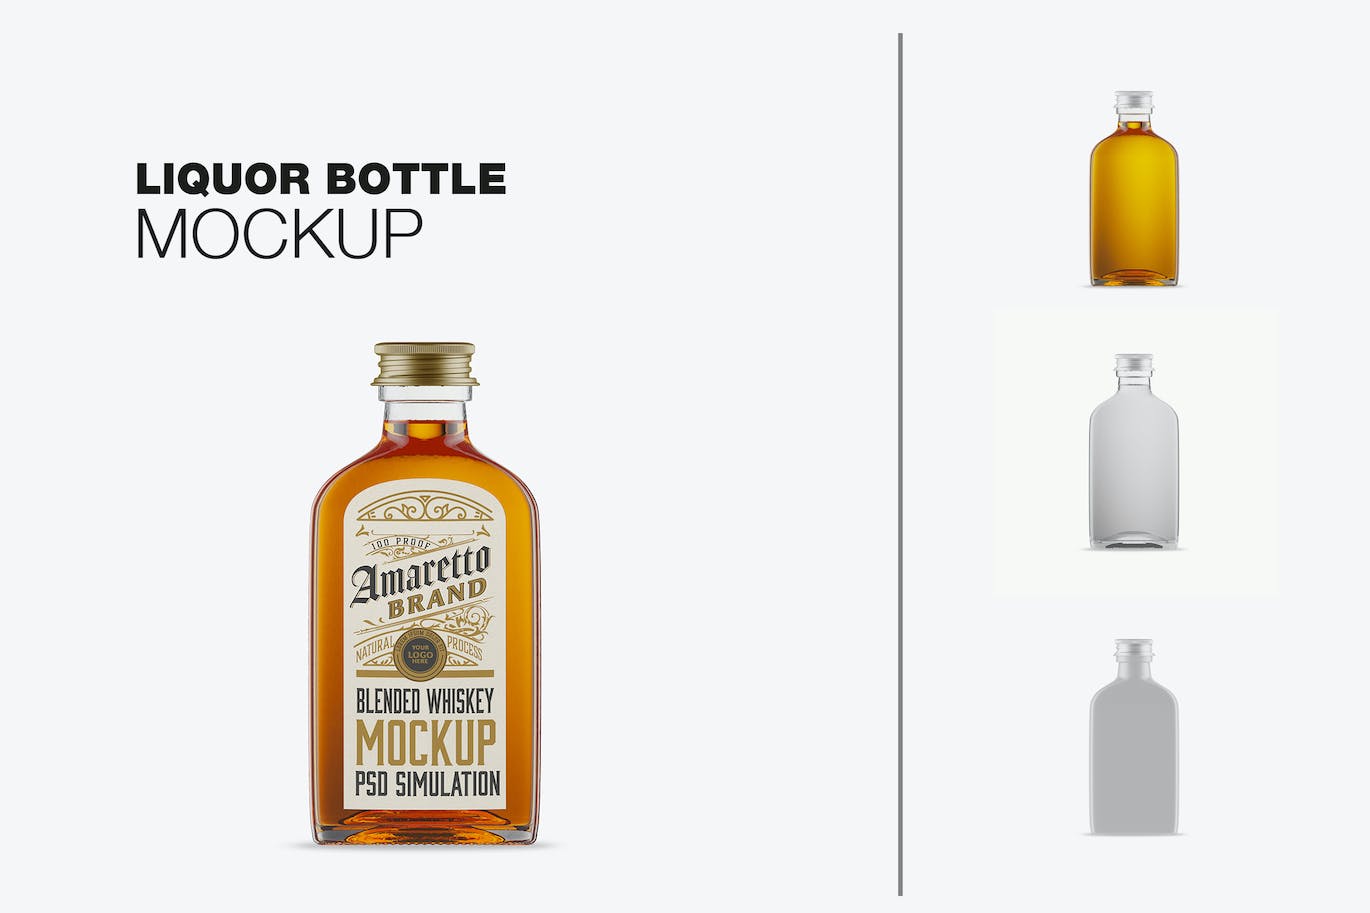 扁平威士忌玻璃瓶设计样机 Flat Whiskey Glass Bottle Mockup 样机素材 第1张